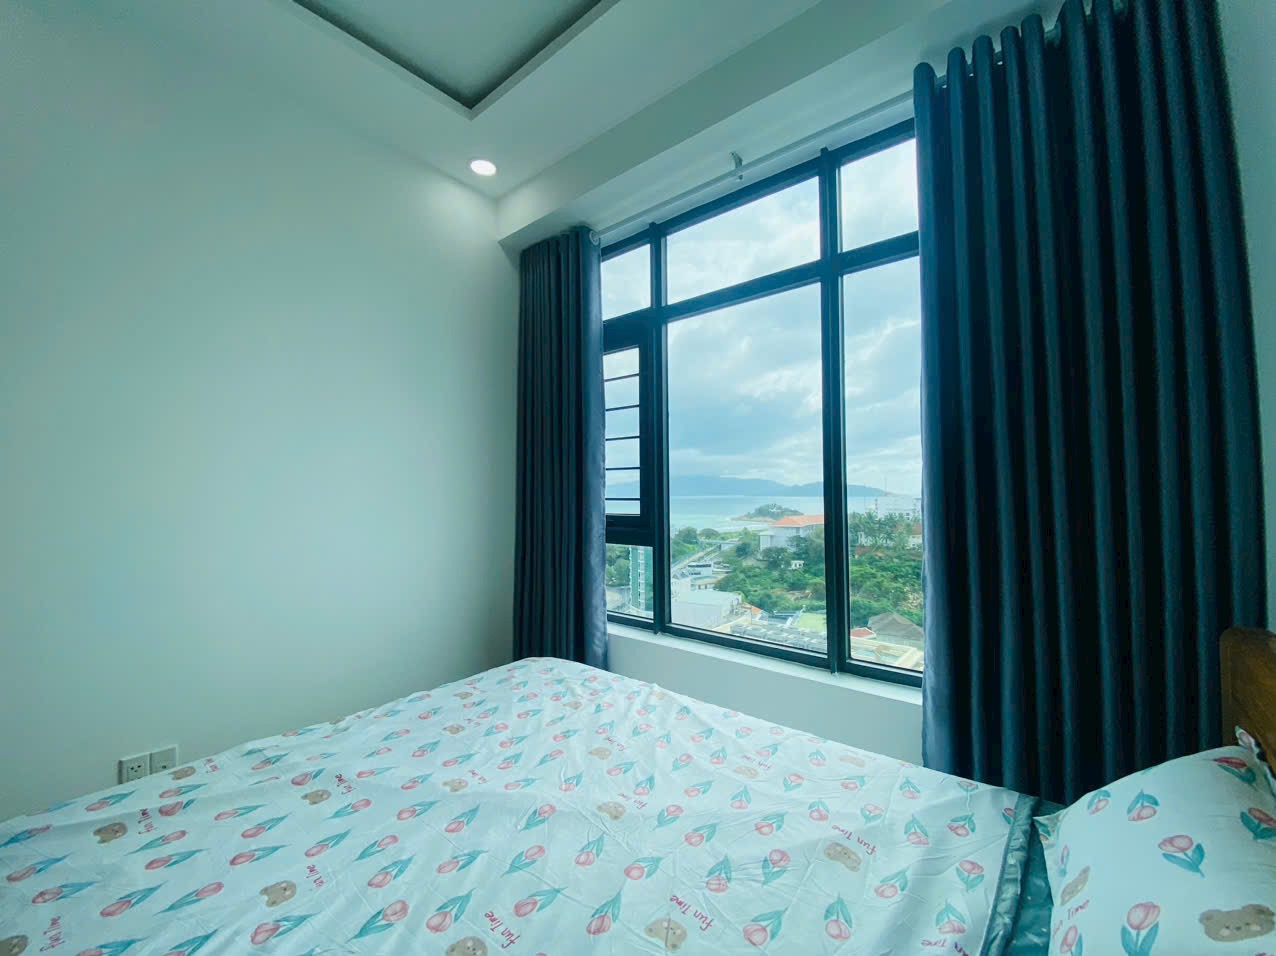 View biển phòng ngủ master - Căn hộ Mường Thanh Viễn Triều OC2B đông nam 58m2 | Đại hạ giá: 100 triệu